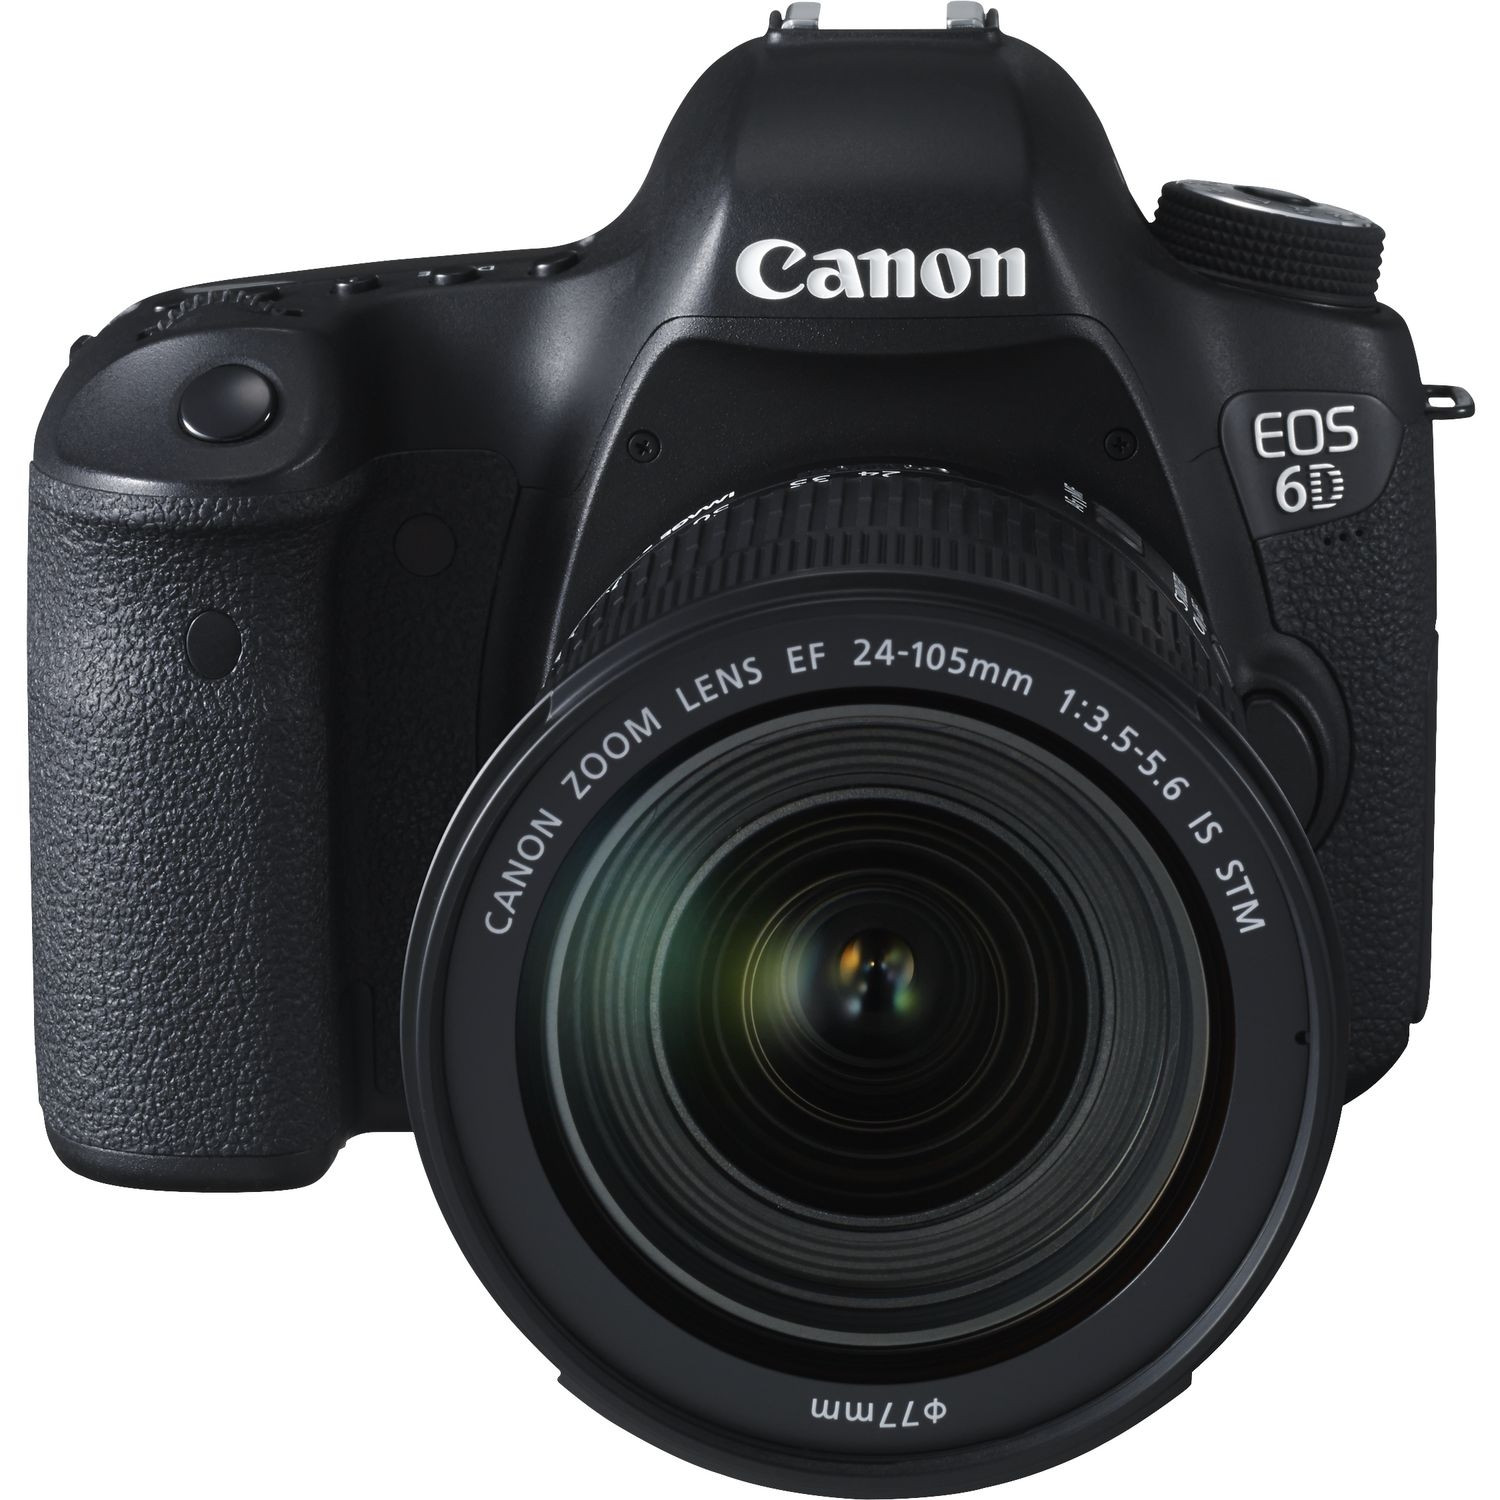 CANON Fotocamera Eos 6D + 24-105mm F3.5-5-6 IS STM + GARANZIA 2 ANNI  ASSISTENZA IN ITALIA +